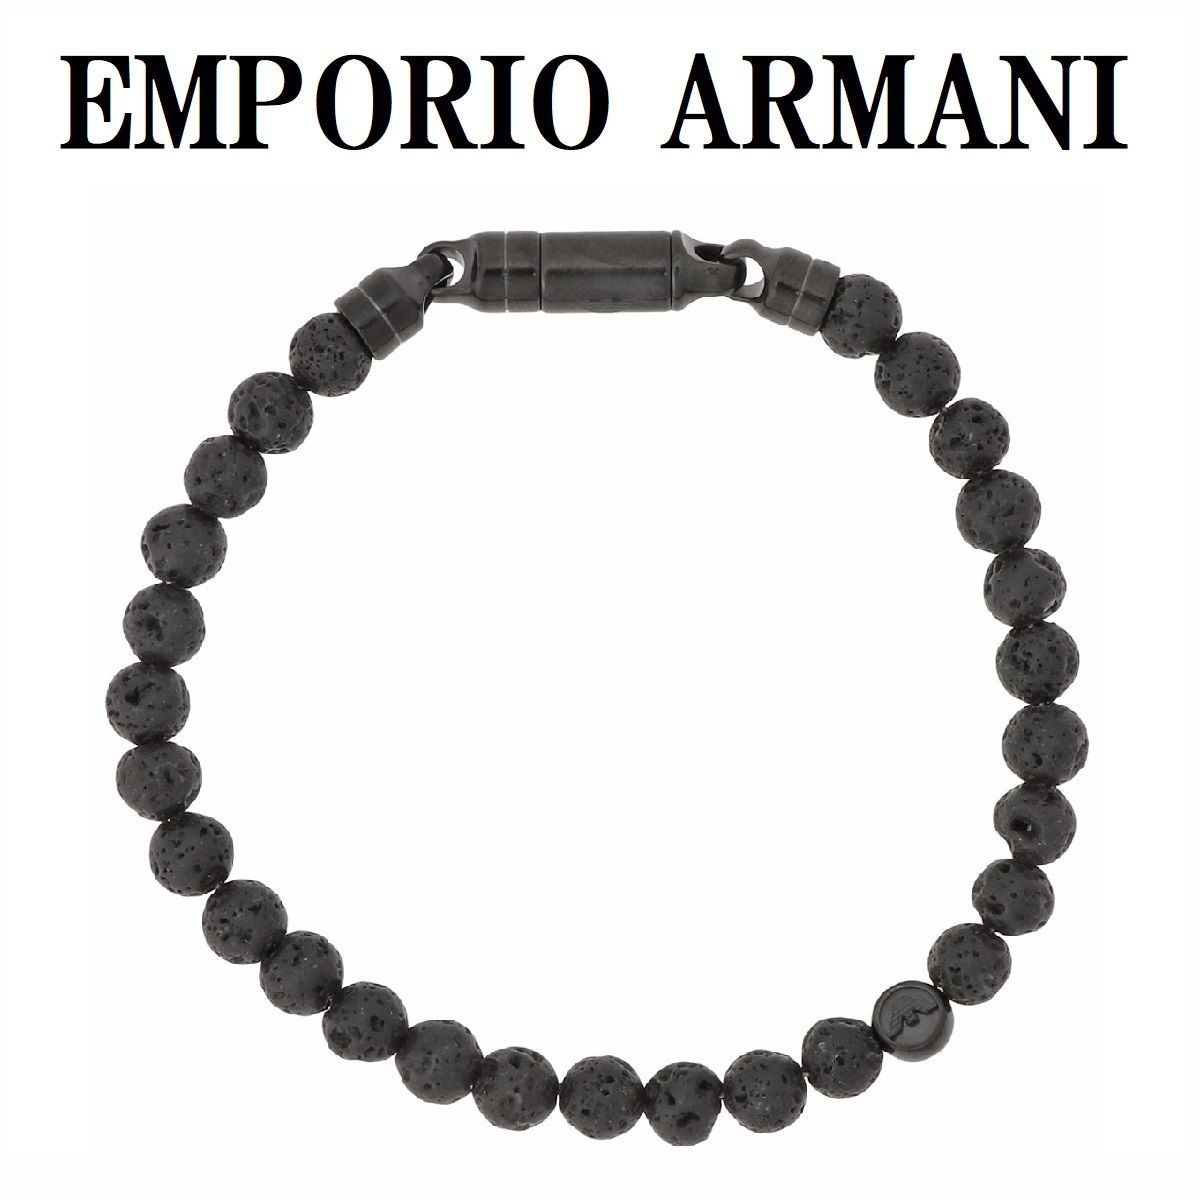 EMPORIO ARMANI エンポリオ アルマーニ EGS2478001 ブレスレット ビーズ イーグル ロゴ 数珠 ブレス アクセサリー